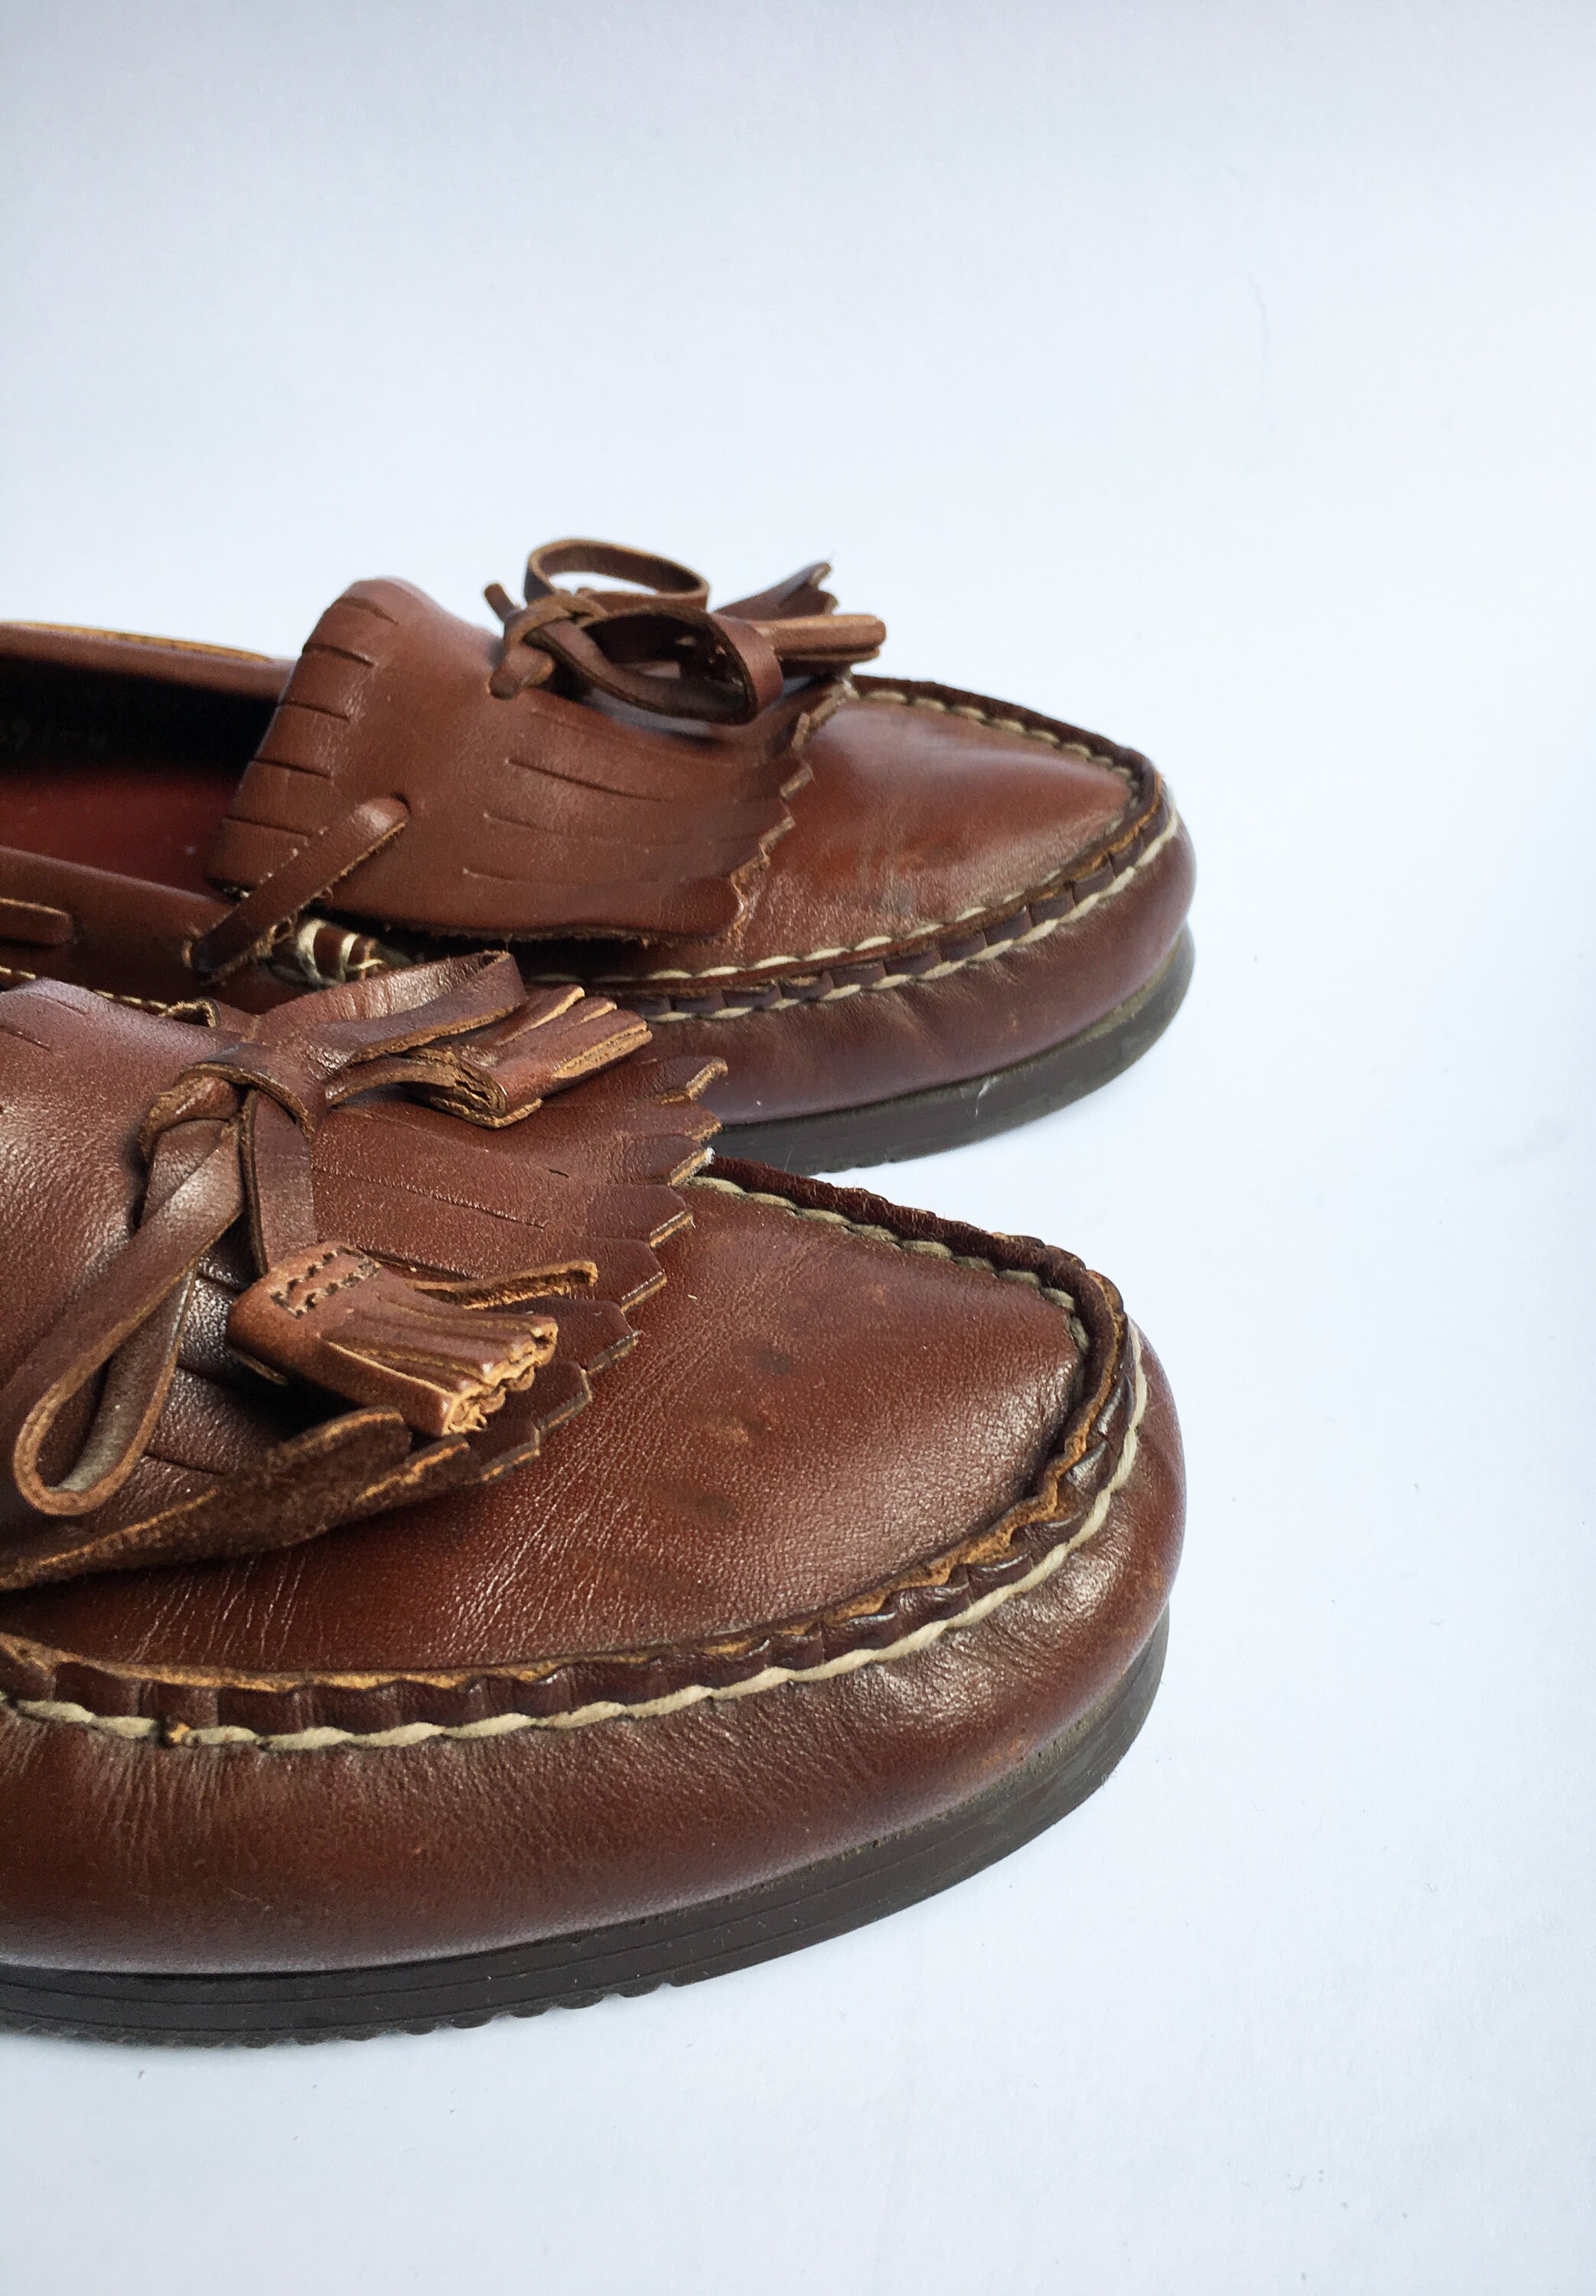 Vintage Boat Shoes Women US Size 6.5 UK Size 4.5 EU Size 37 | Etsy